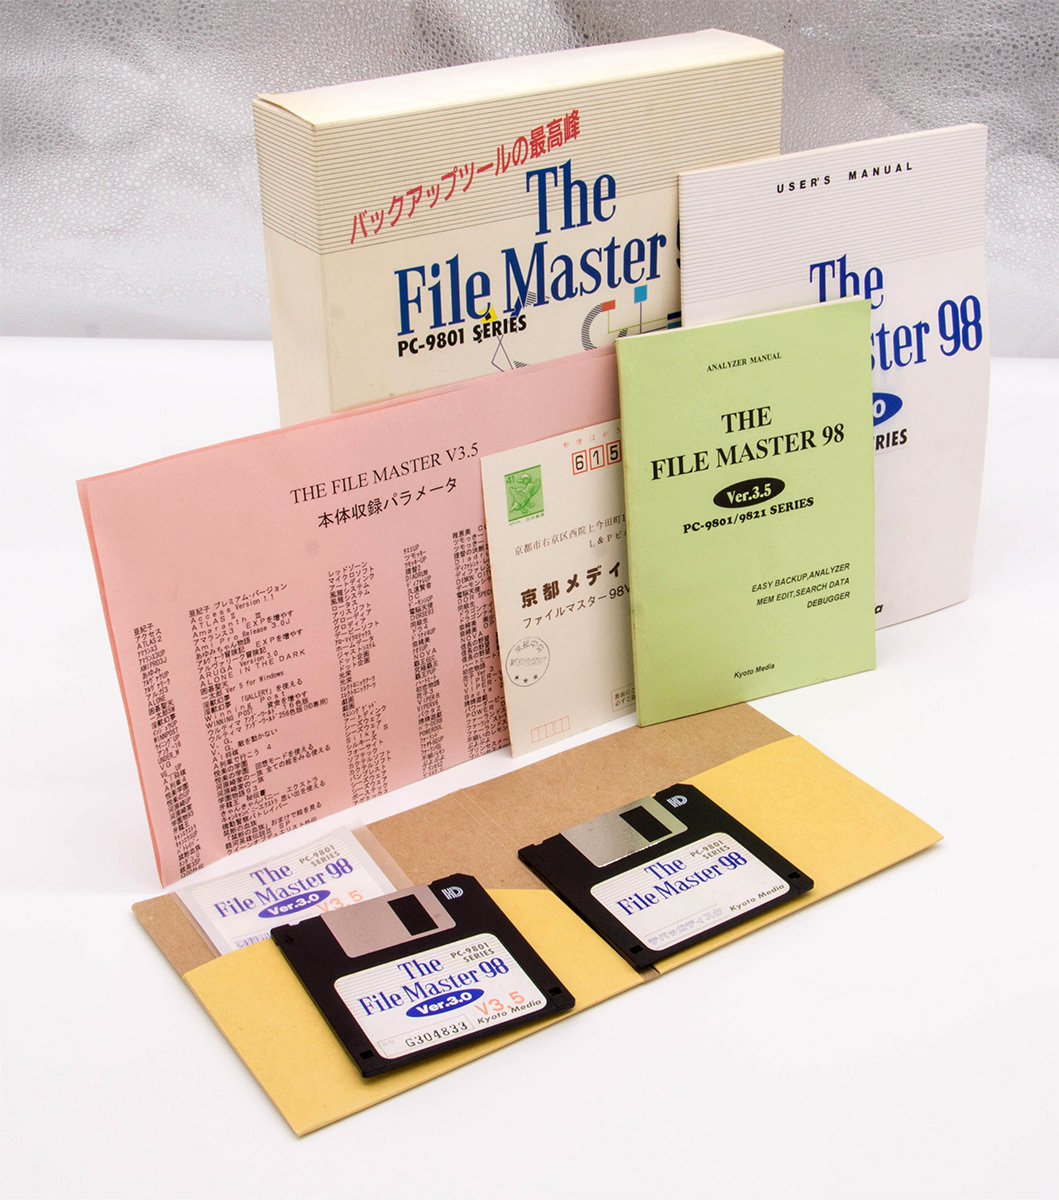 京都メディア The File Master 98 PC-9801シリーズ Ver.3.5 3.5